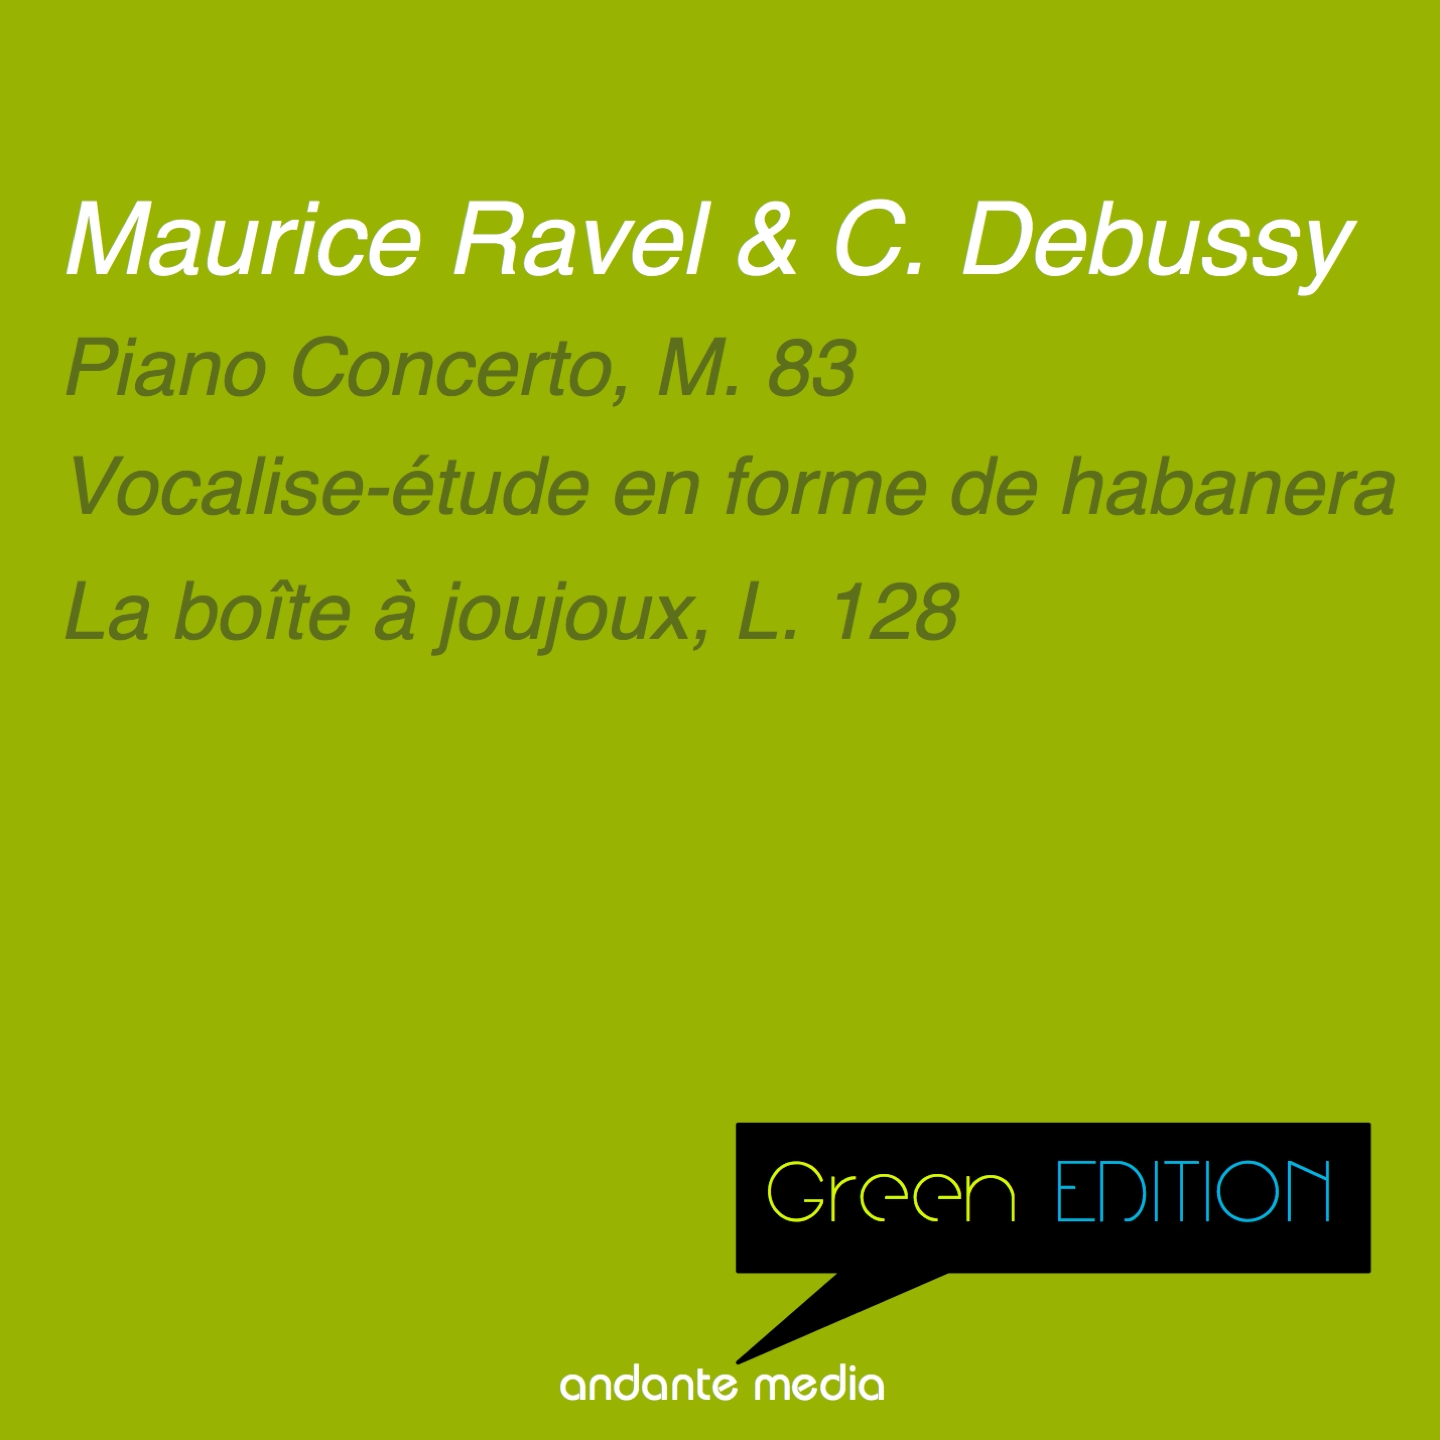 Green Edition  Ravel  Debussy: Piano Concerto, M. 83  La bo te a joujoux, L. 128